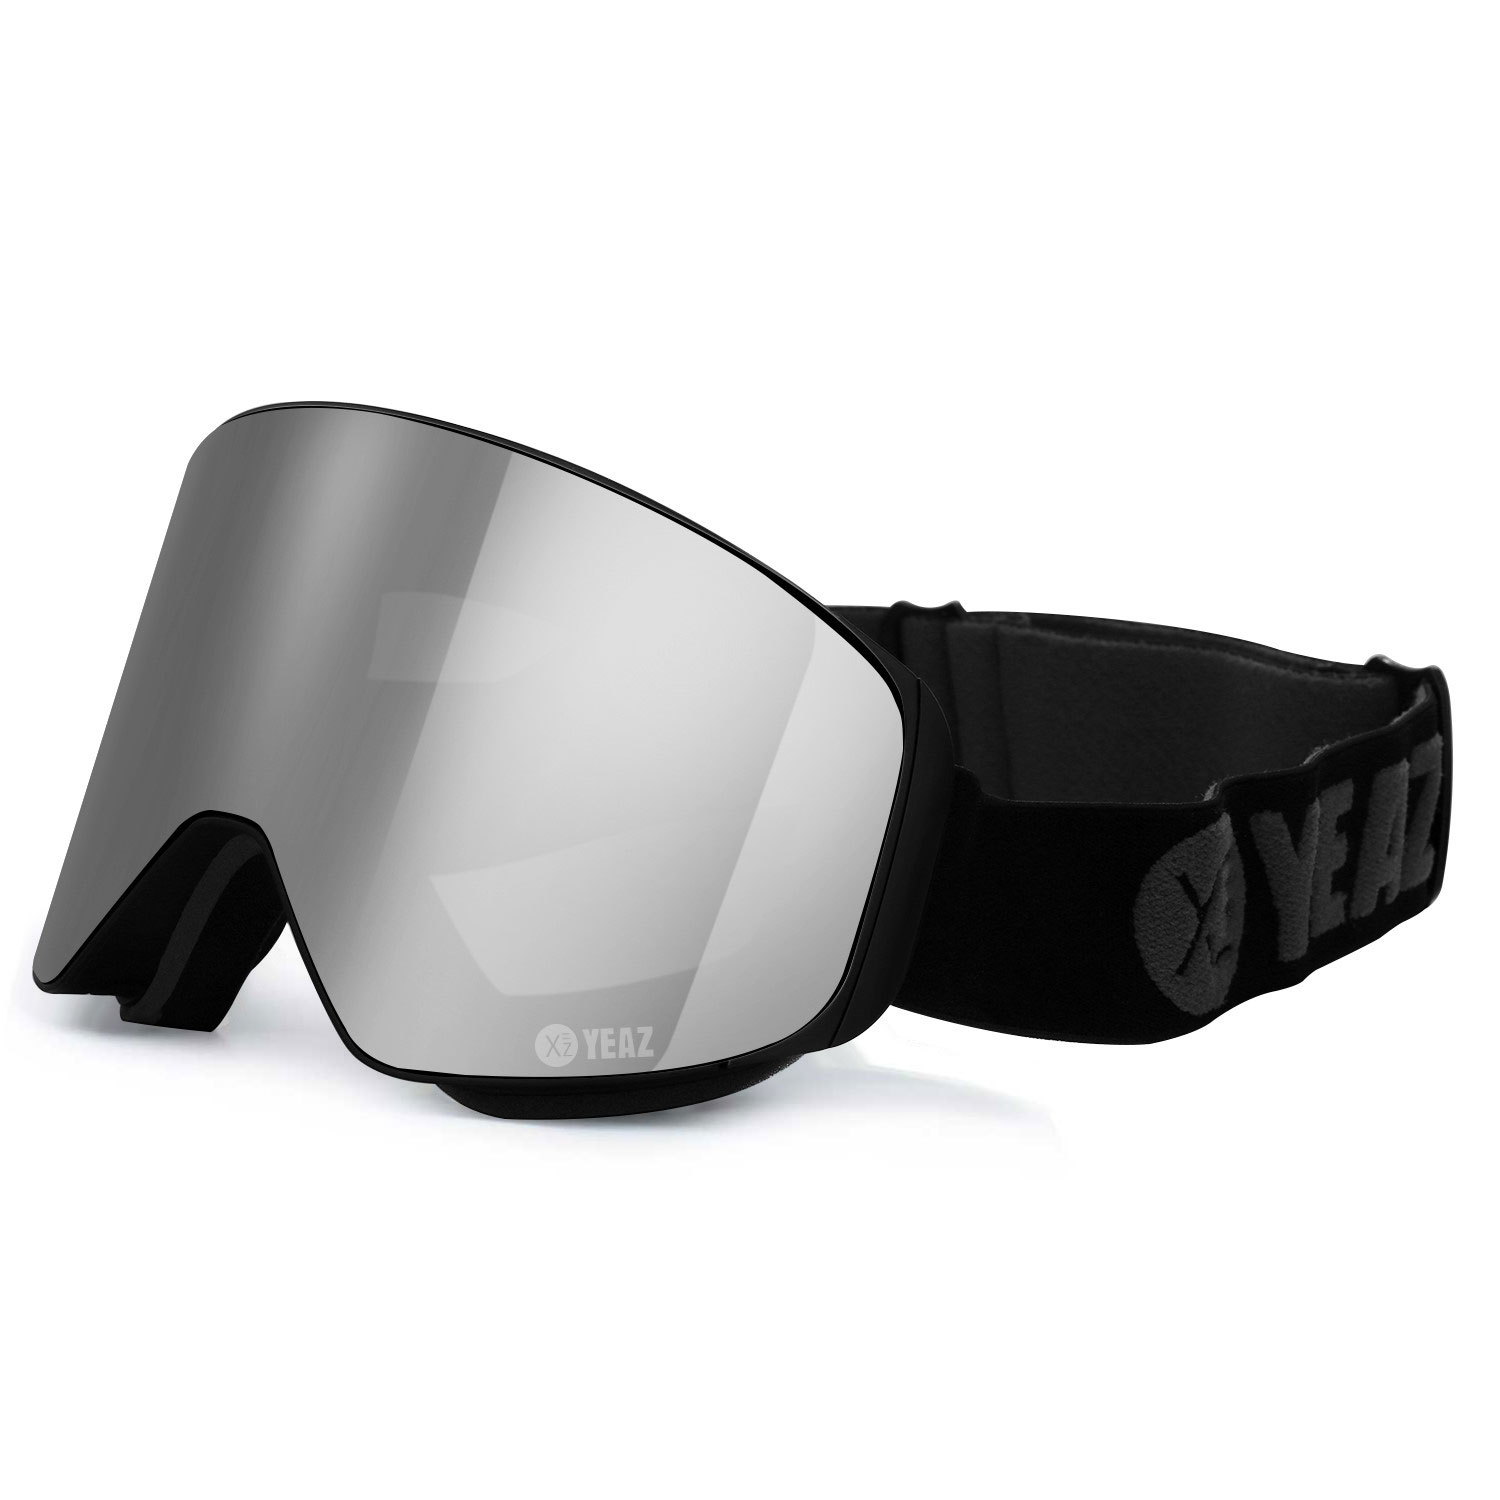 APEX Magnet Ski Snowboard goggles silver / grey | Ski- / Snowboard goggles  | YEAZ | YEAZ